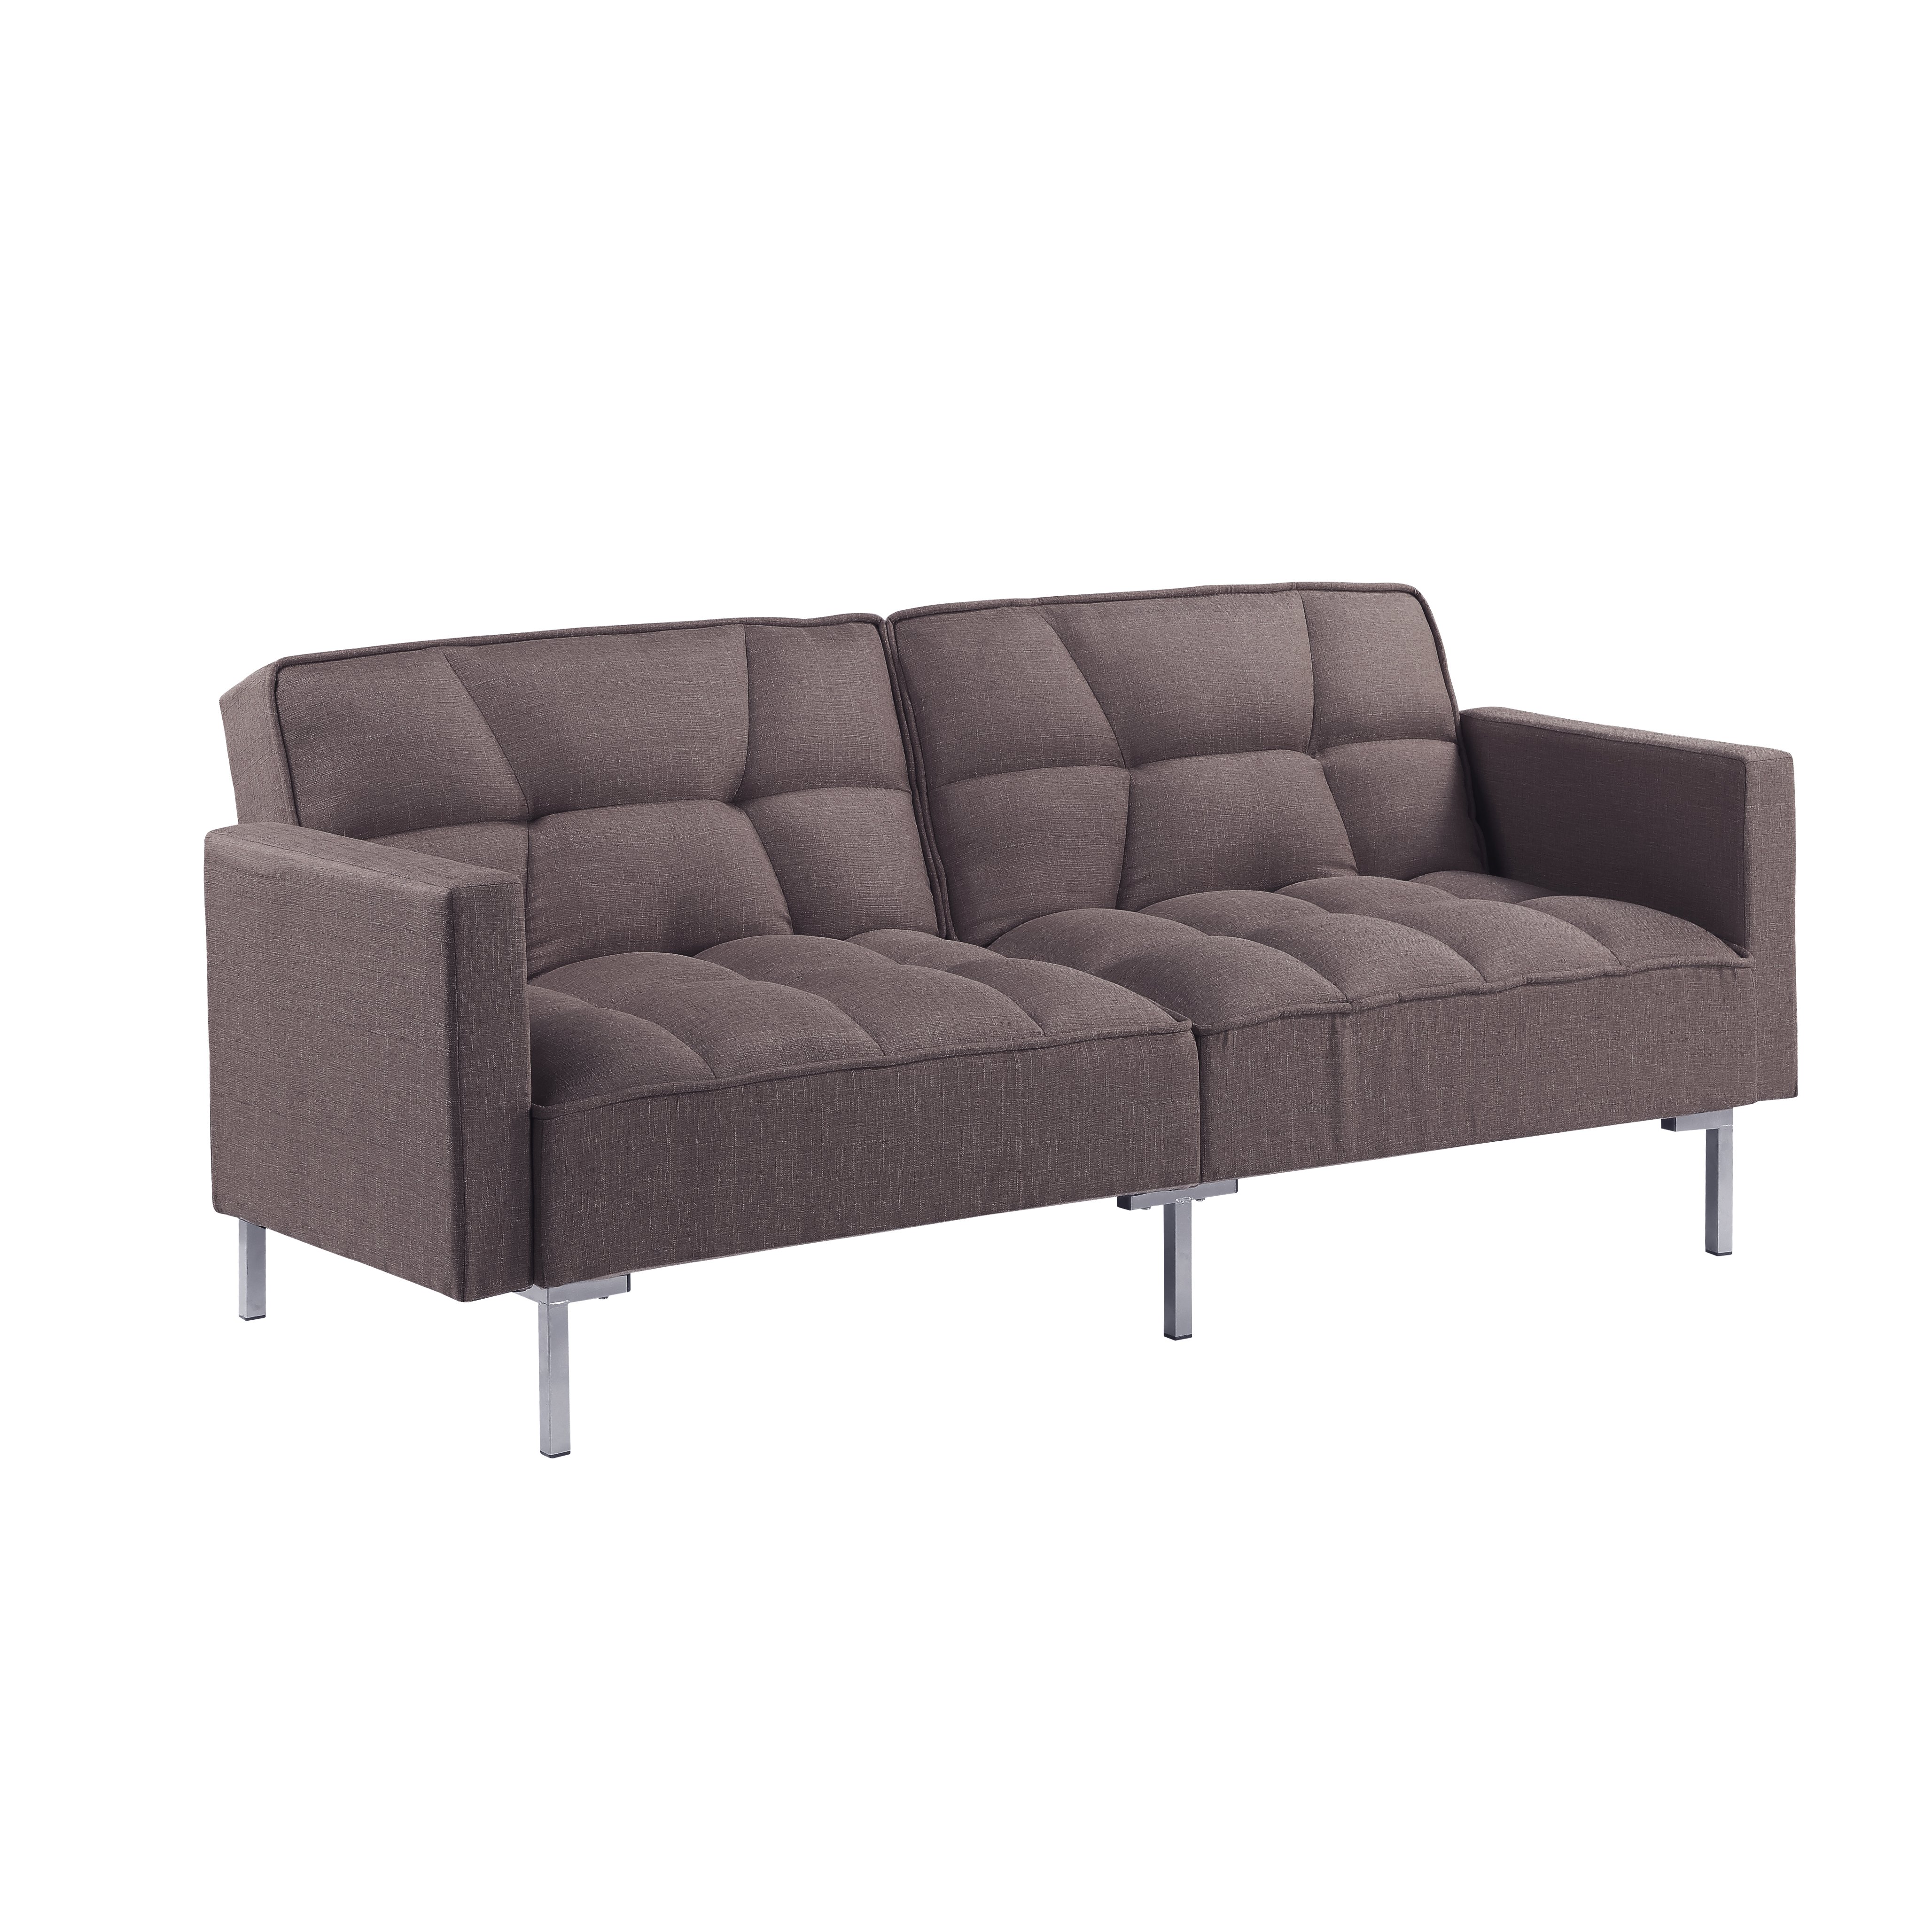 Linen Upholstered Modern Convertible Folding Futon Sofa Bed-CASAINC